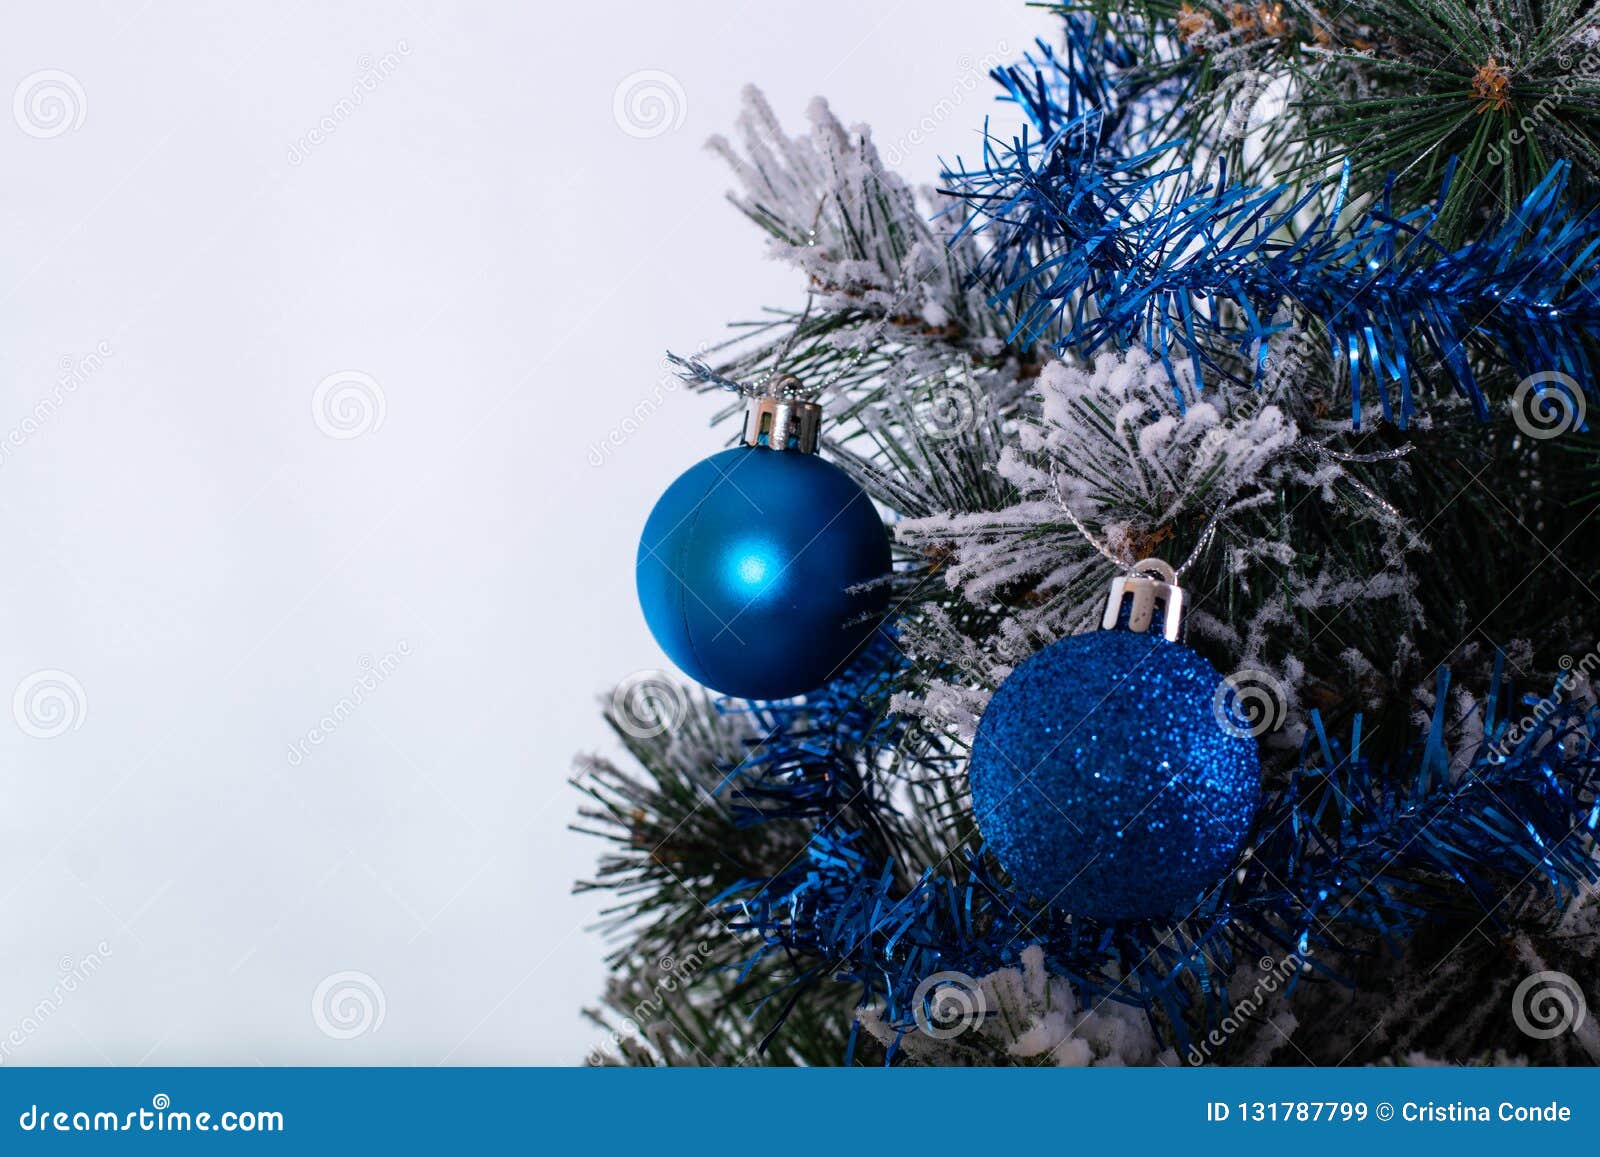 Bolas Azules Y De Plata La Decoración De La Navidad En Un árbol Con Malla Y Pinecone Nieve Imagen de archivo - de plata, amarillo: 131787799